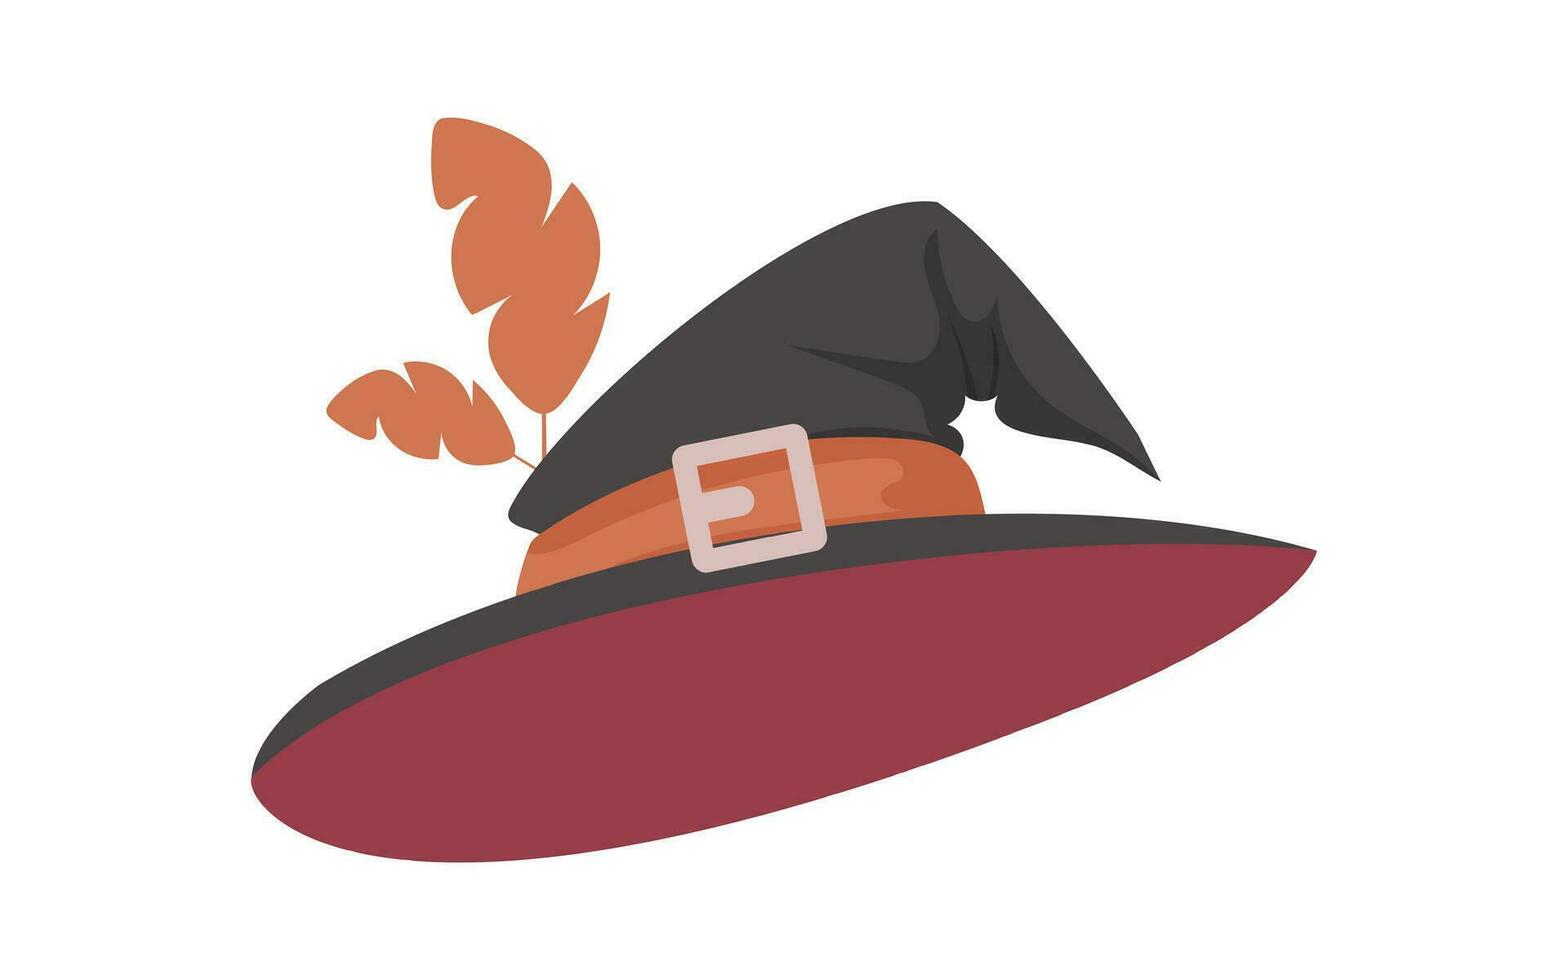 en häxans hatt är en lång hatt den där häxor sätta på deras huvuden. den har en skarp form. en halloween hatt den där liknar en baseboll keps. tecknad serie stil, vektor illustration